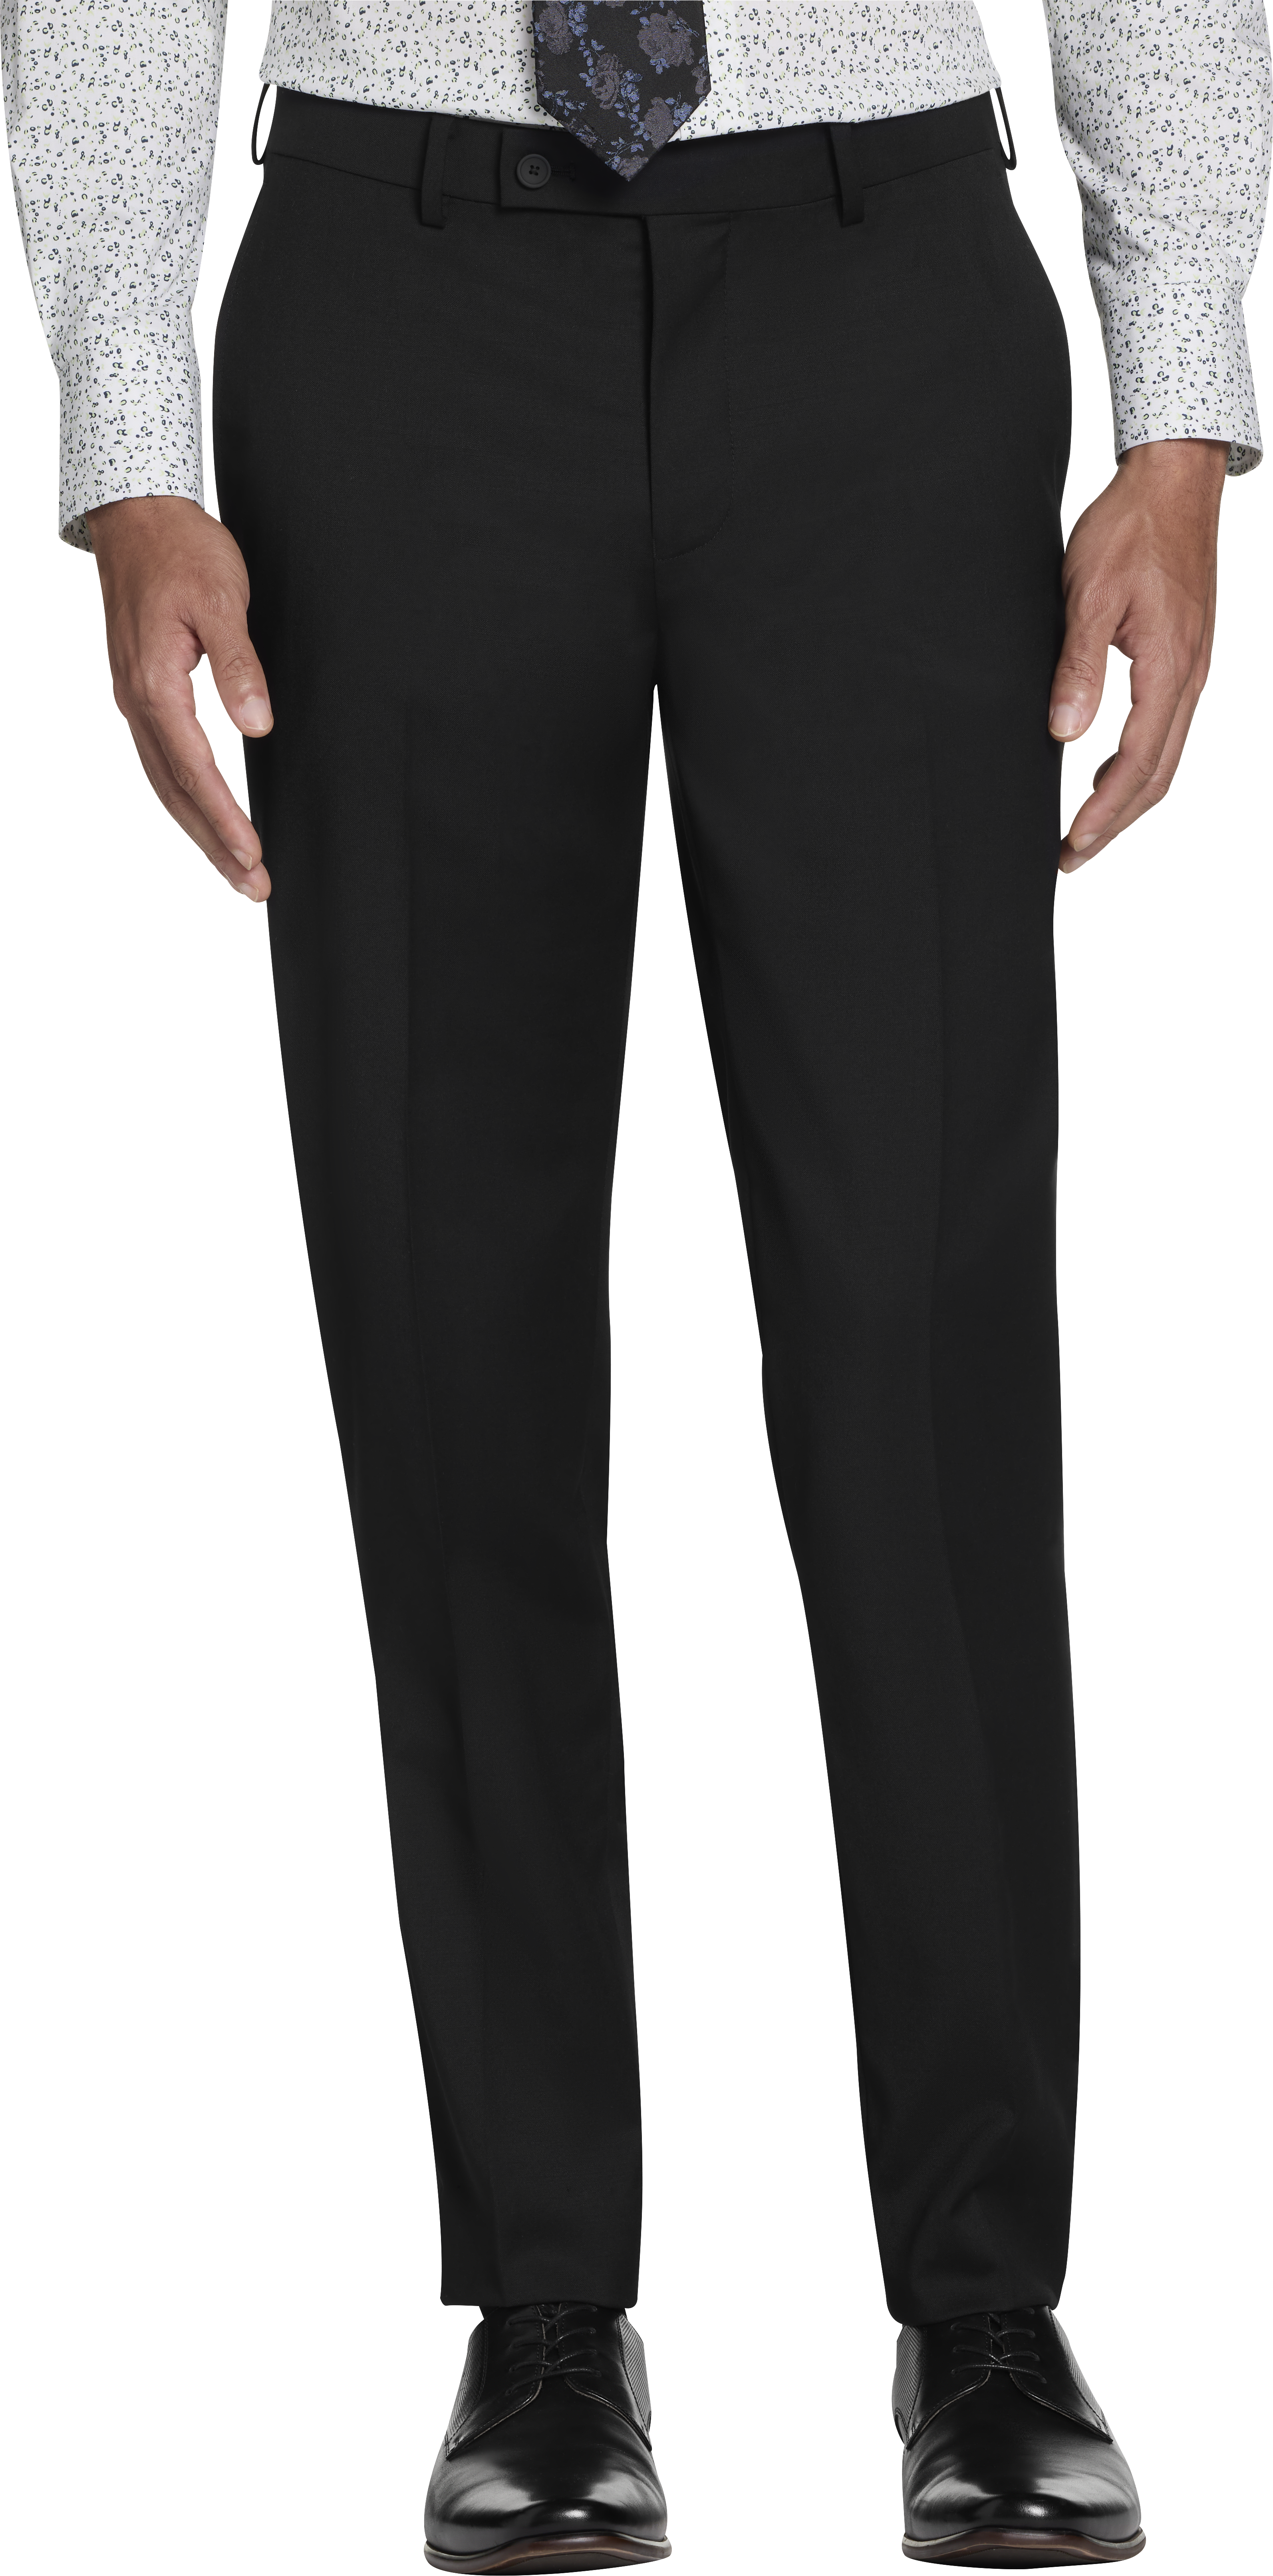 CHILLFLEX Slim Fit Suit Separates Pants